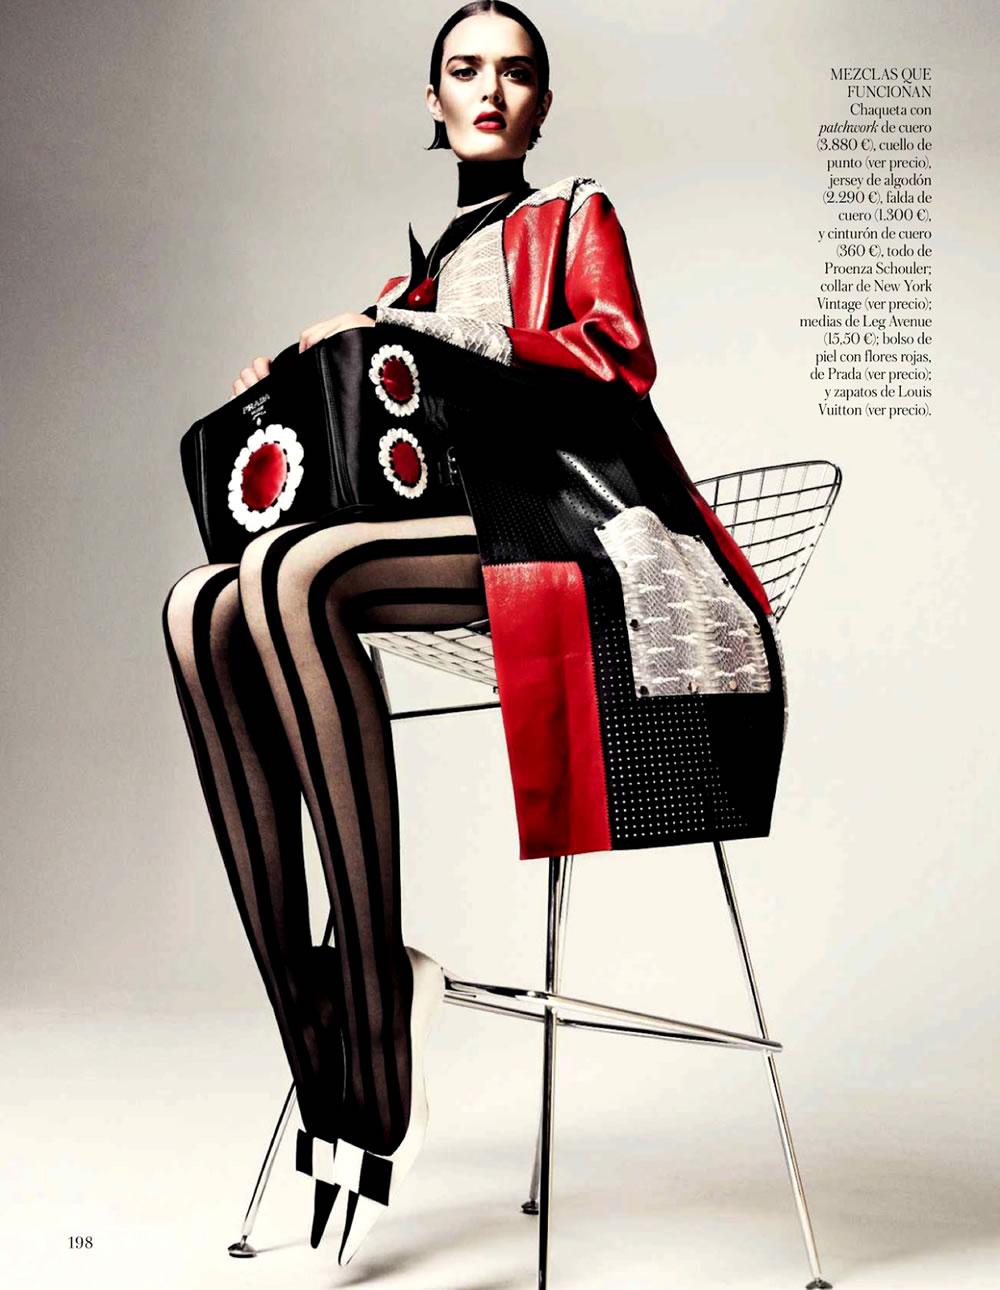 Sam Rollison by Jason Kibbler for Vogue Spain May 2013